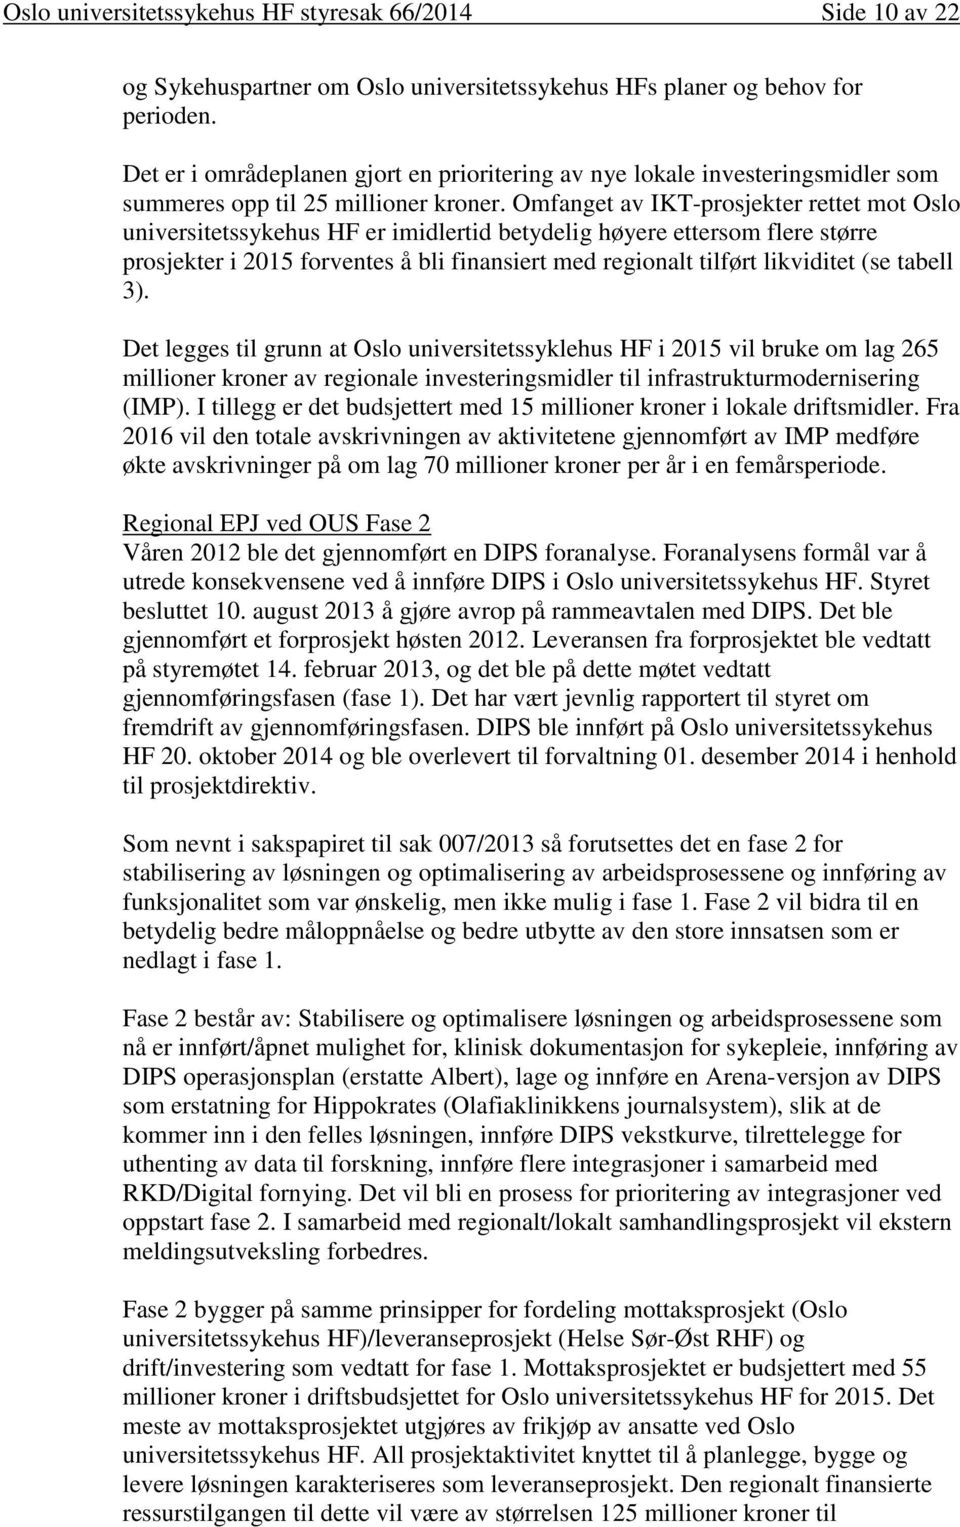 Omfanget av IKT-prosjekter rettet mot Oslo universitetssykehus HF er imidlertid betydelig høyere ettersom flere større prosjekter i 2015 forventes å bli finansiert med regionalt tilført likviditet